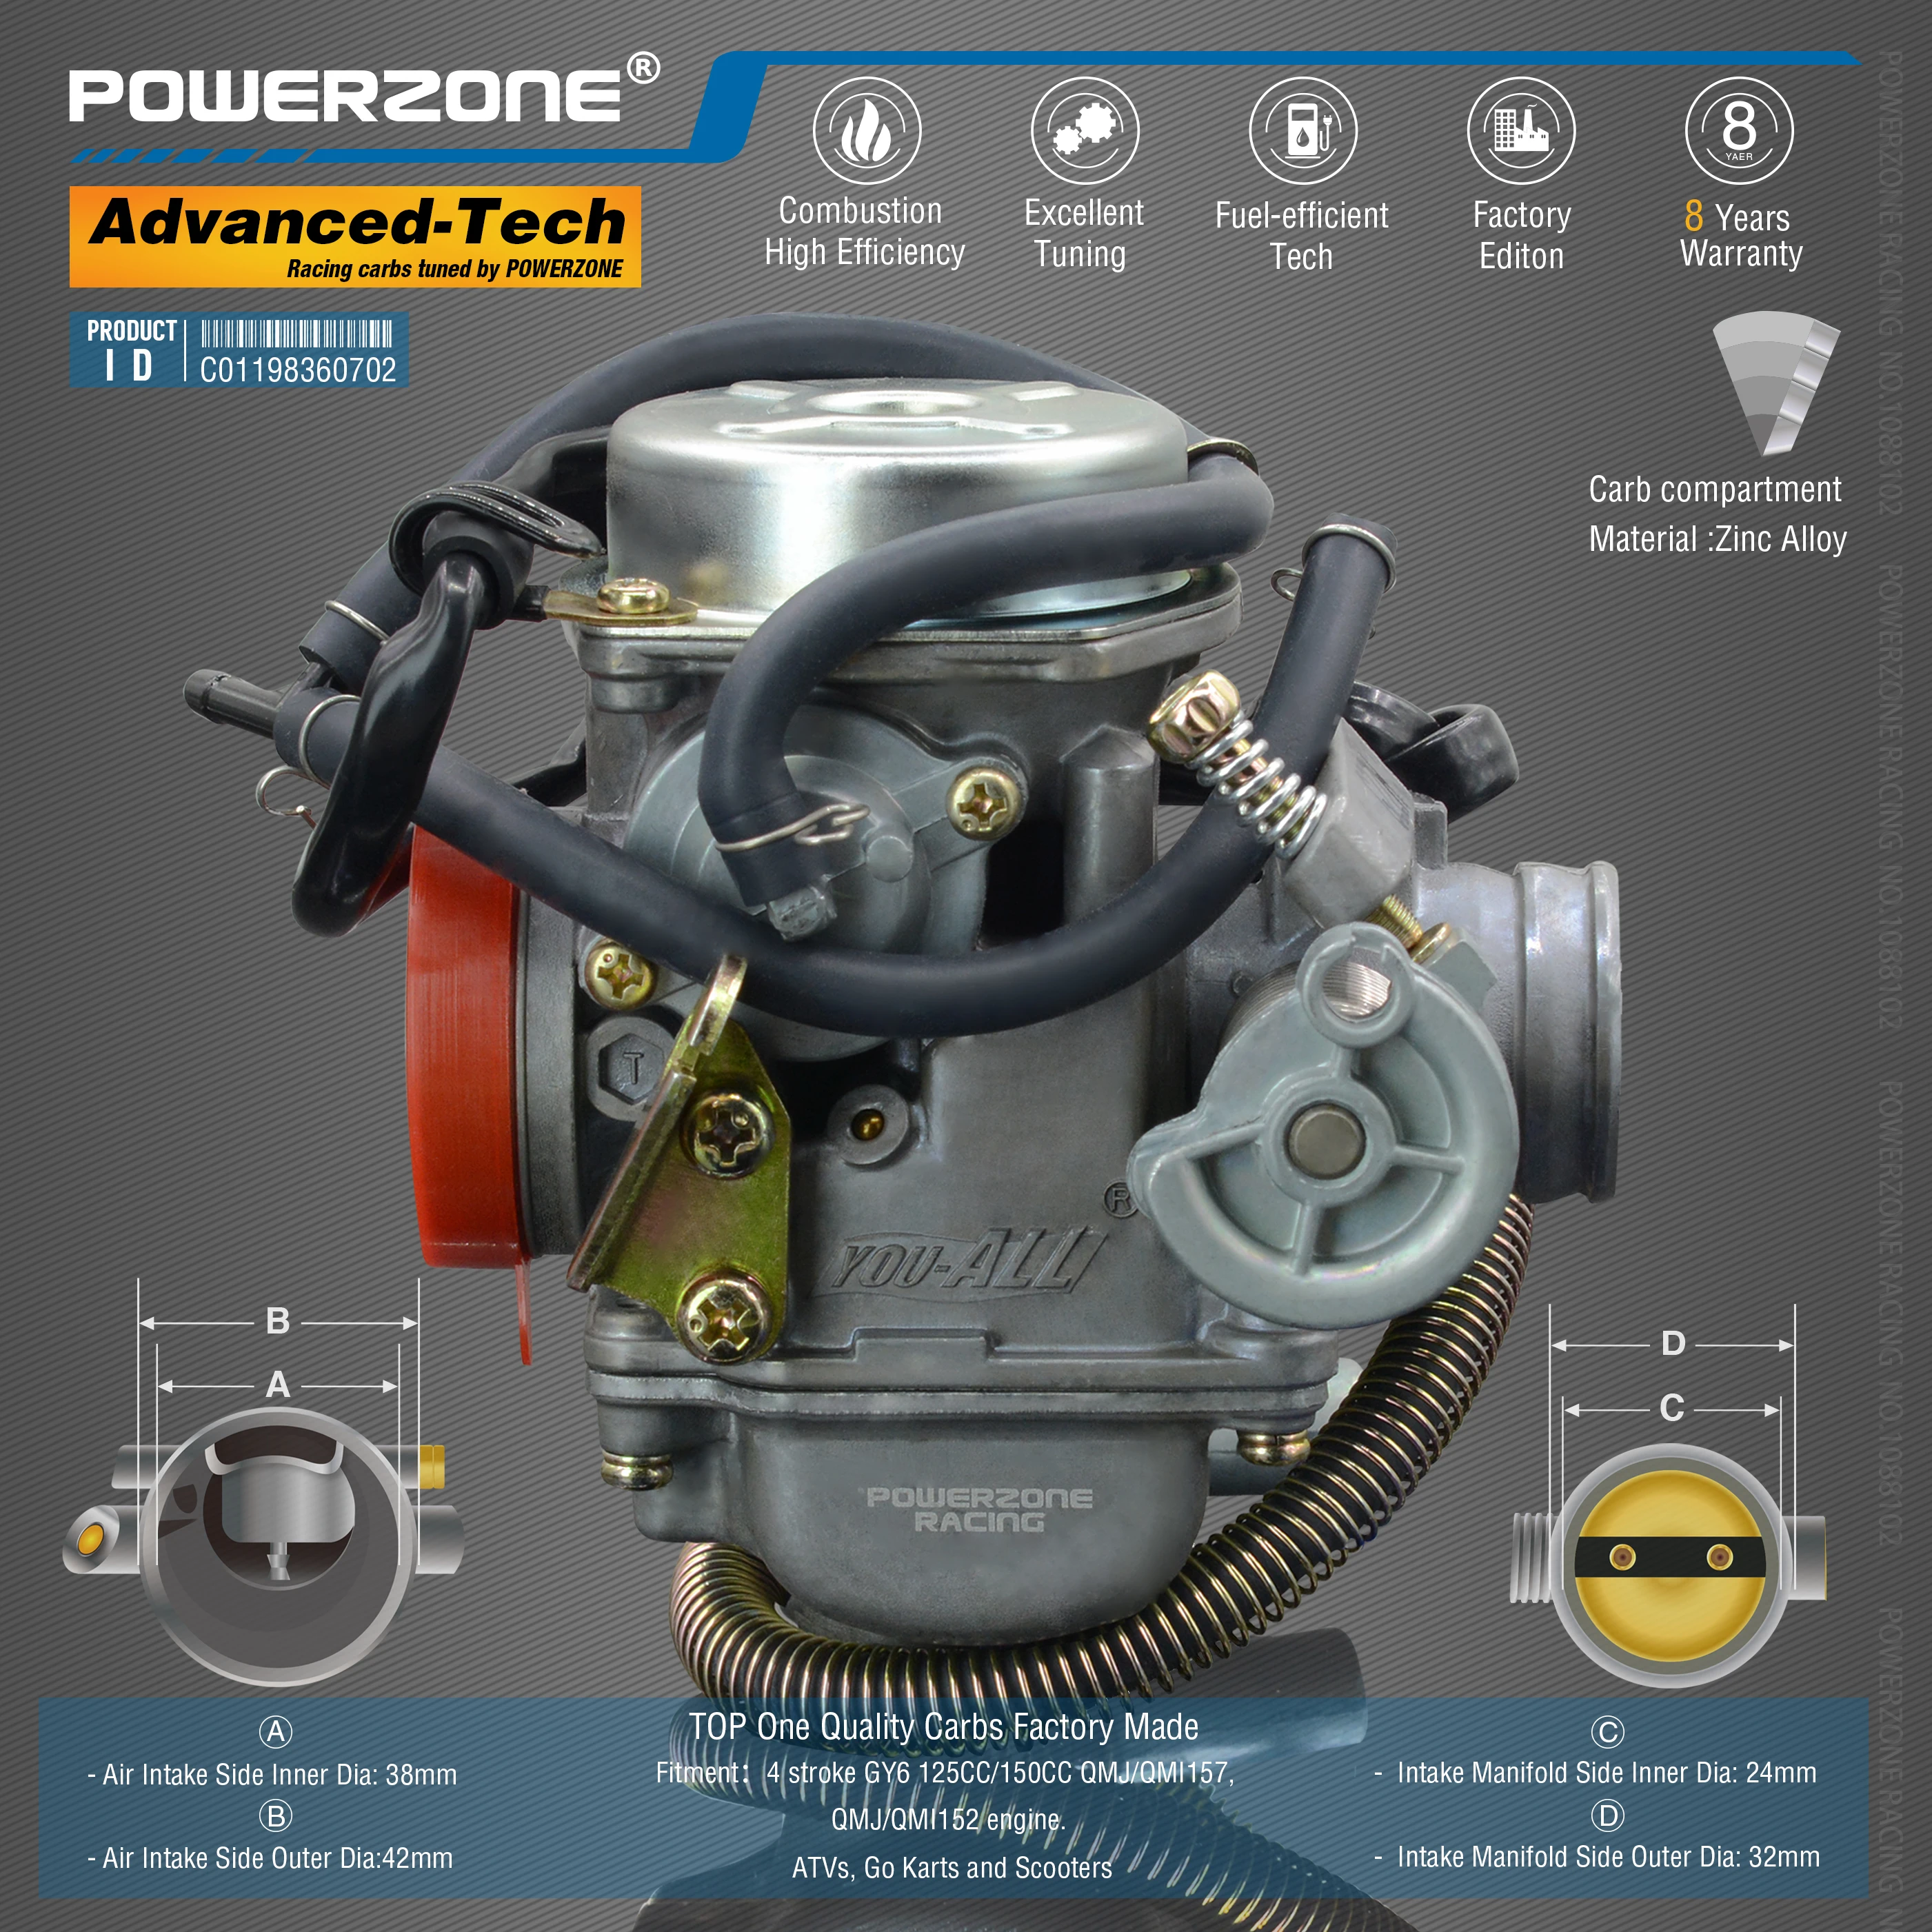 Powerzone Vergaser PD24J 24mm CVK Beschleuniger Pumpe Carb Für GY6  125CC/150CC QMJ/QMI157/152 motor. ATVs, Go Karts und Scoote